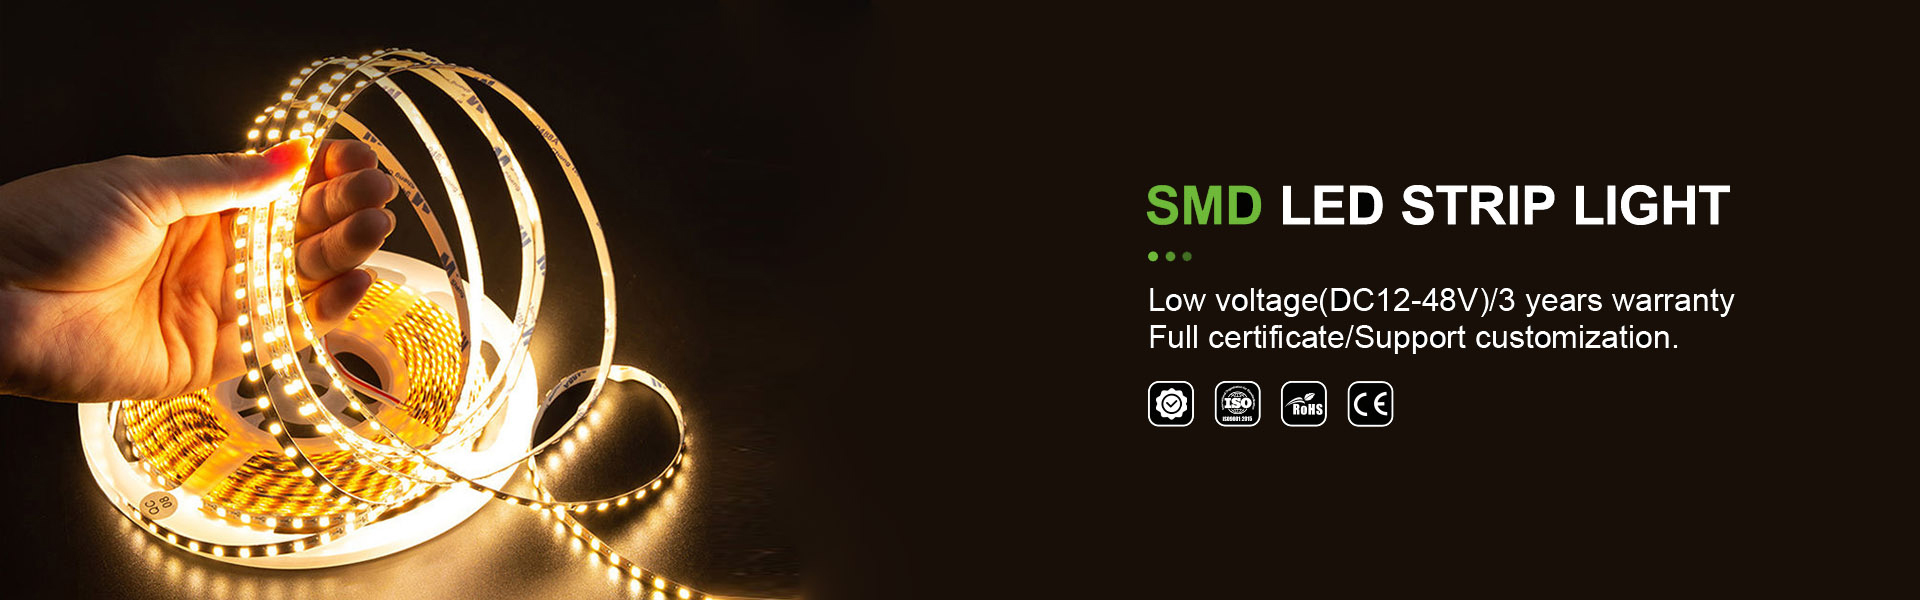 Iluminación de tiras LED, luz deneón, iluminación de tiras,AWS (SZ) Technology Company Limited